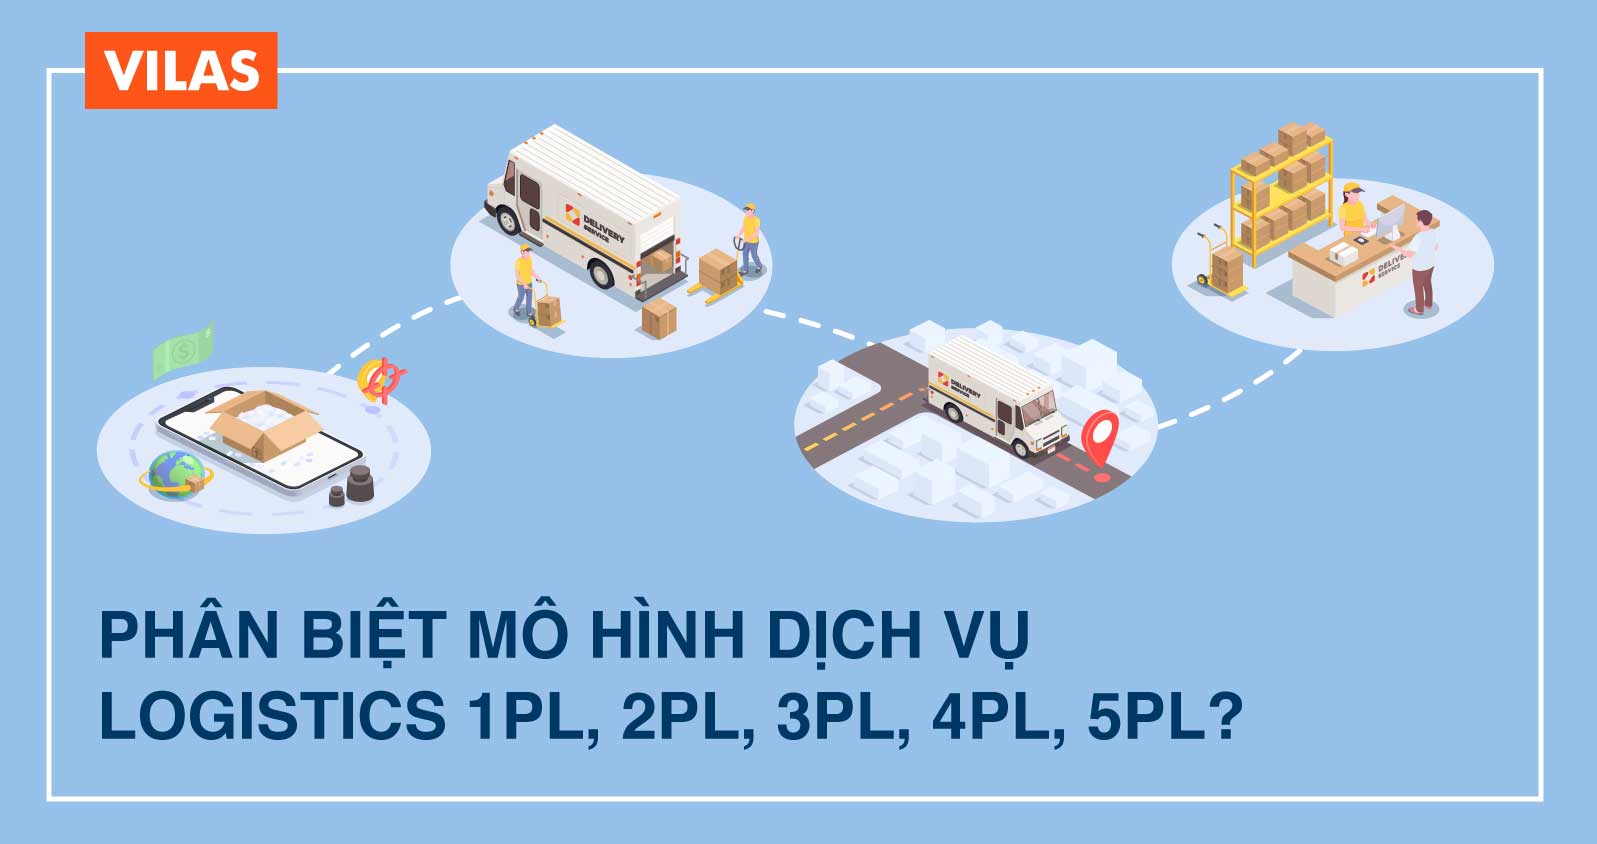 Phân biệt mô hình dịch vụ Logistics 1PL - 2PL - 3PL - 4PL - 5PL? 